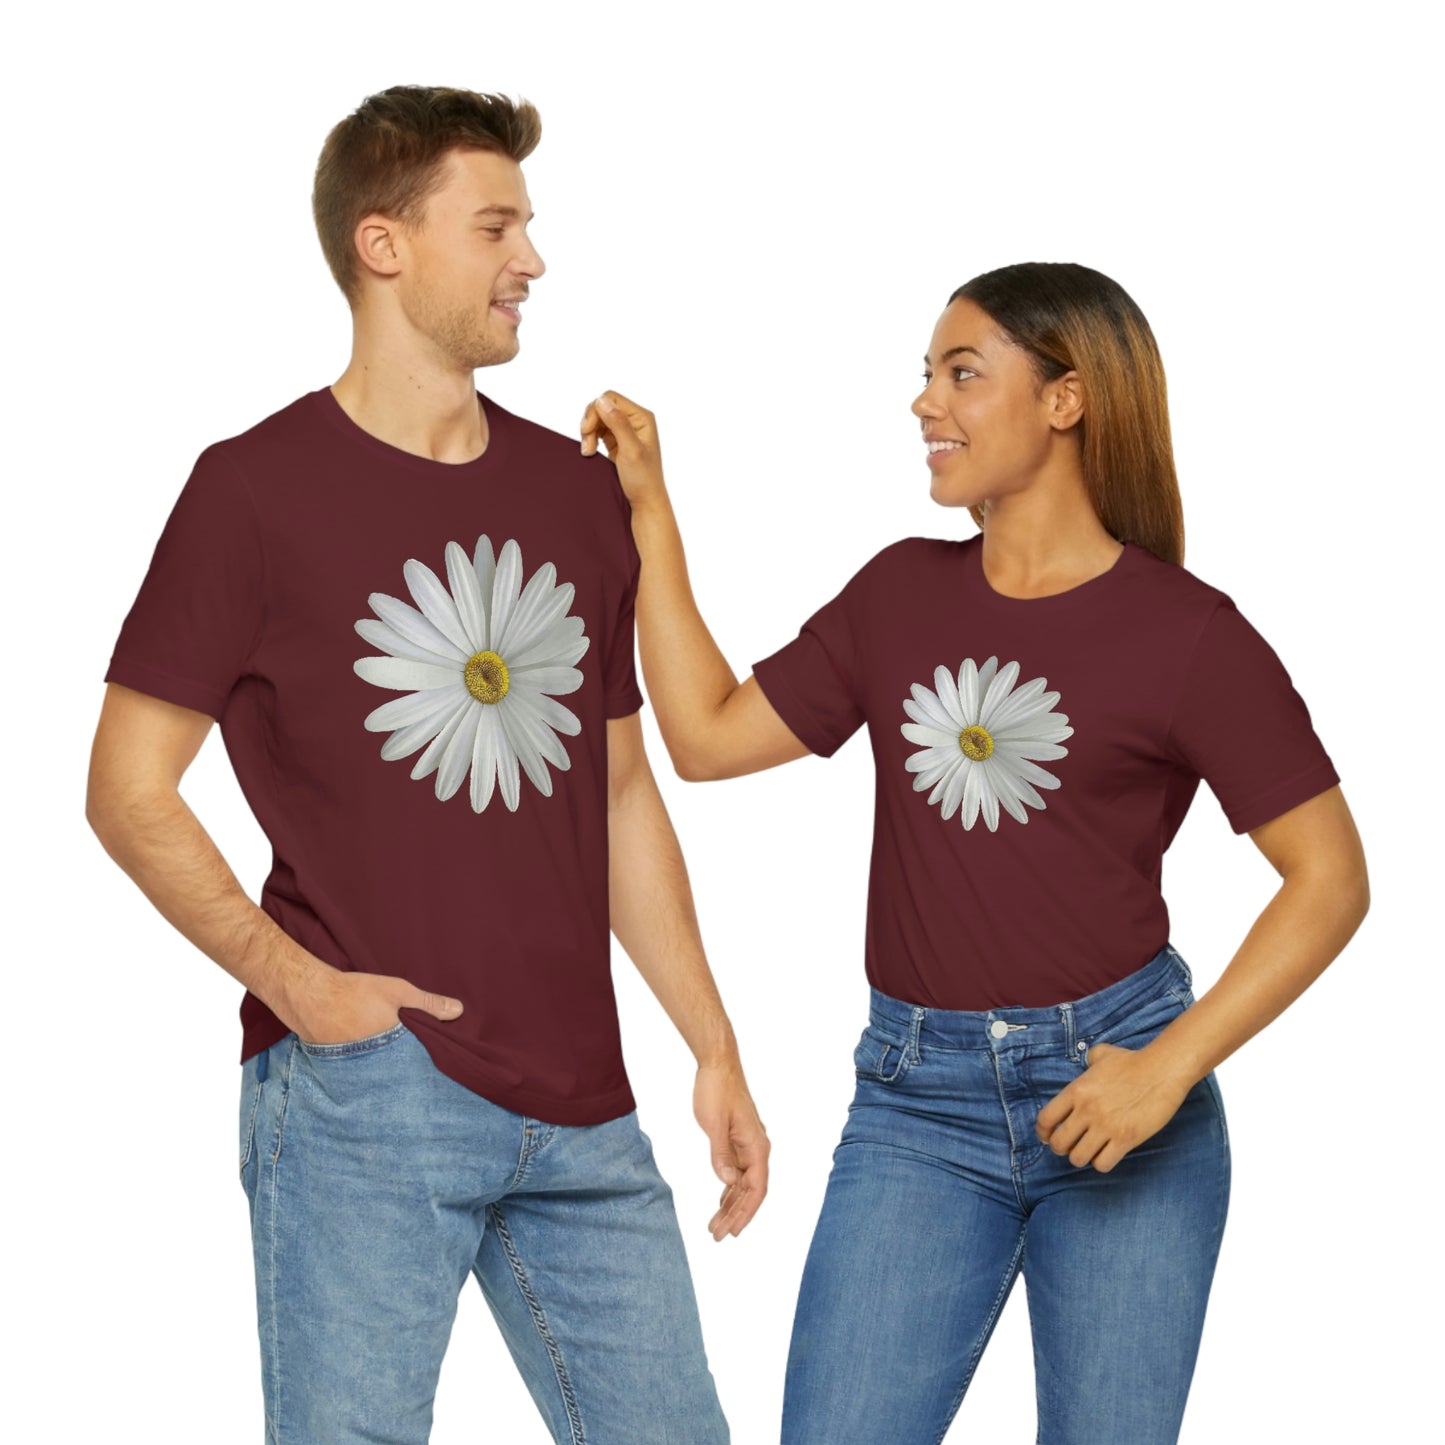 Daisy Shirt Floral Shirt Gift, Wildflower Shirt, Gift For Mom, Daisy Women Shirt Flower Tee Summer Shirt,